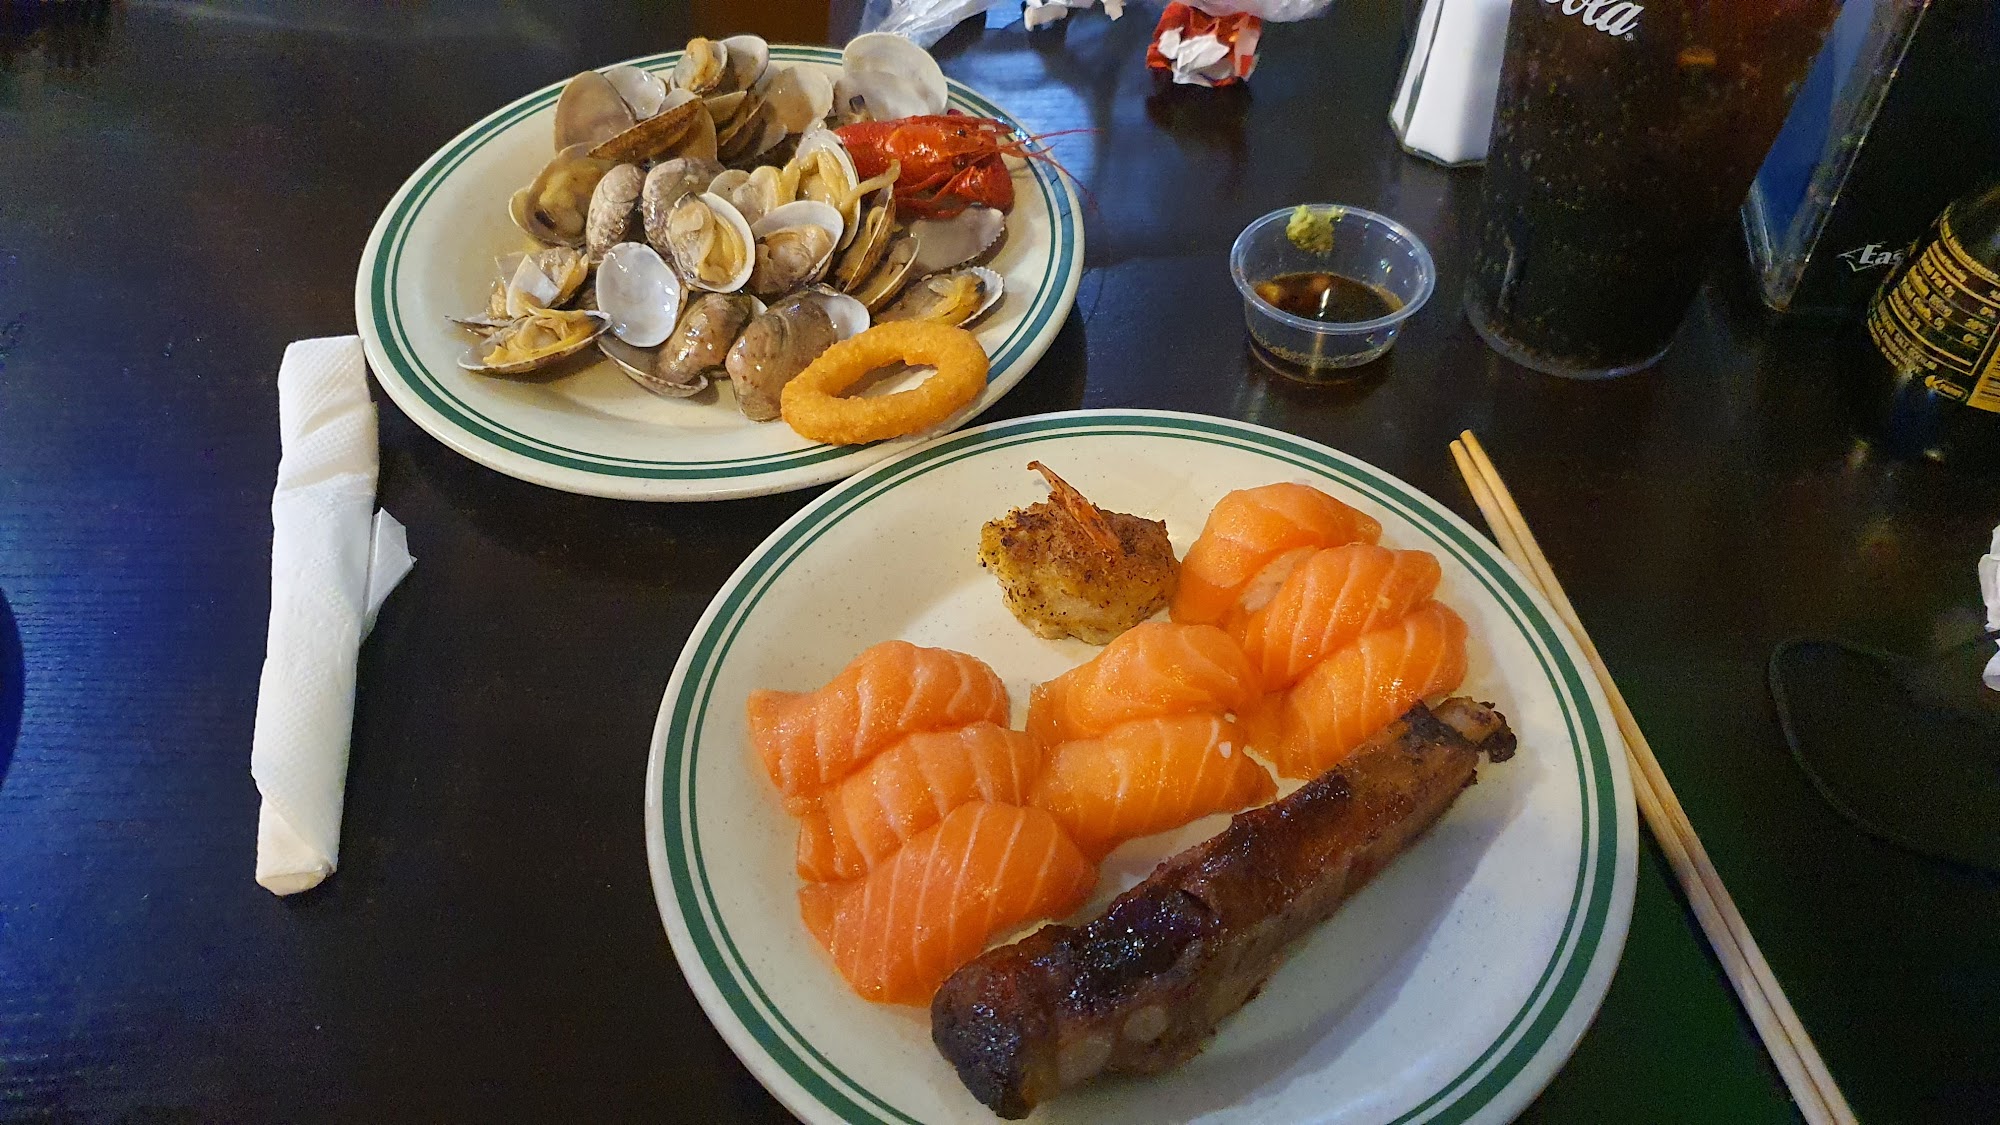 Hibachi Sushi Super Buffet